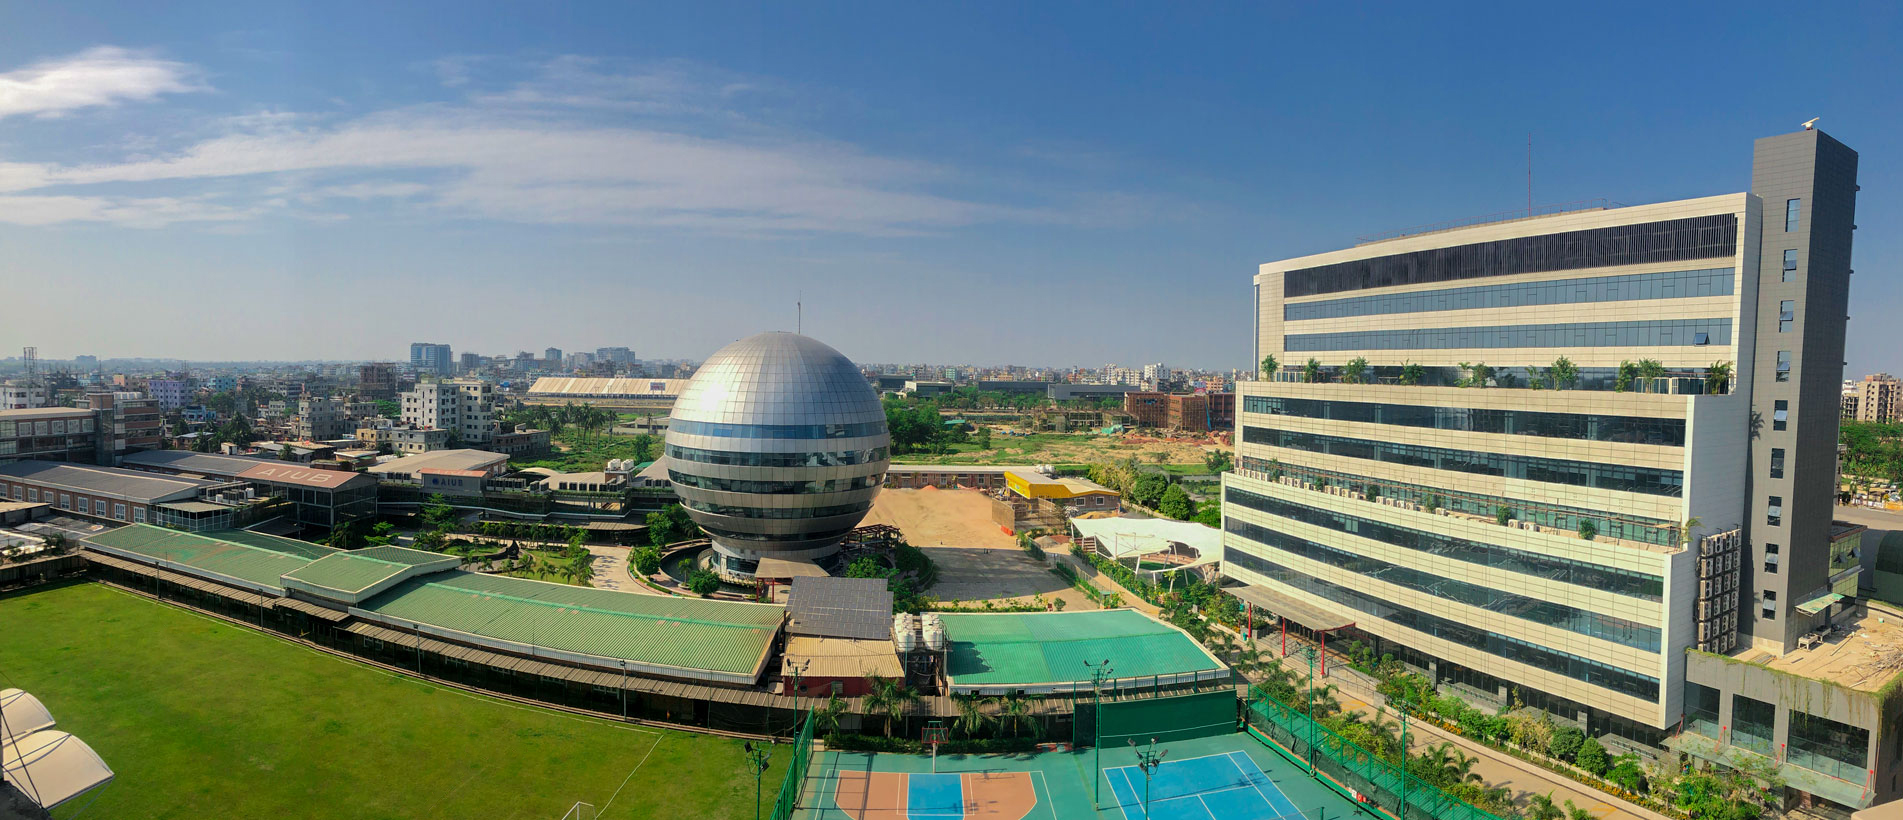 Aerial View of AIUB Campus